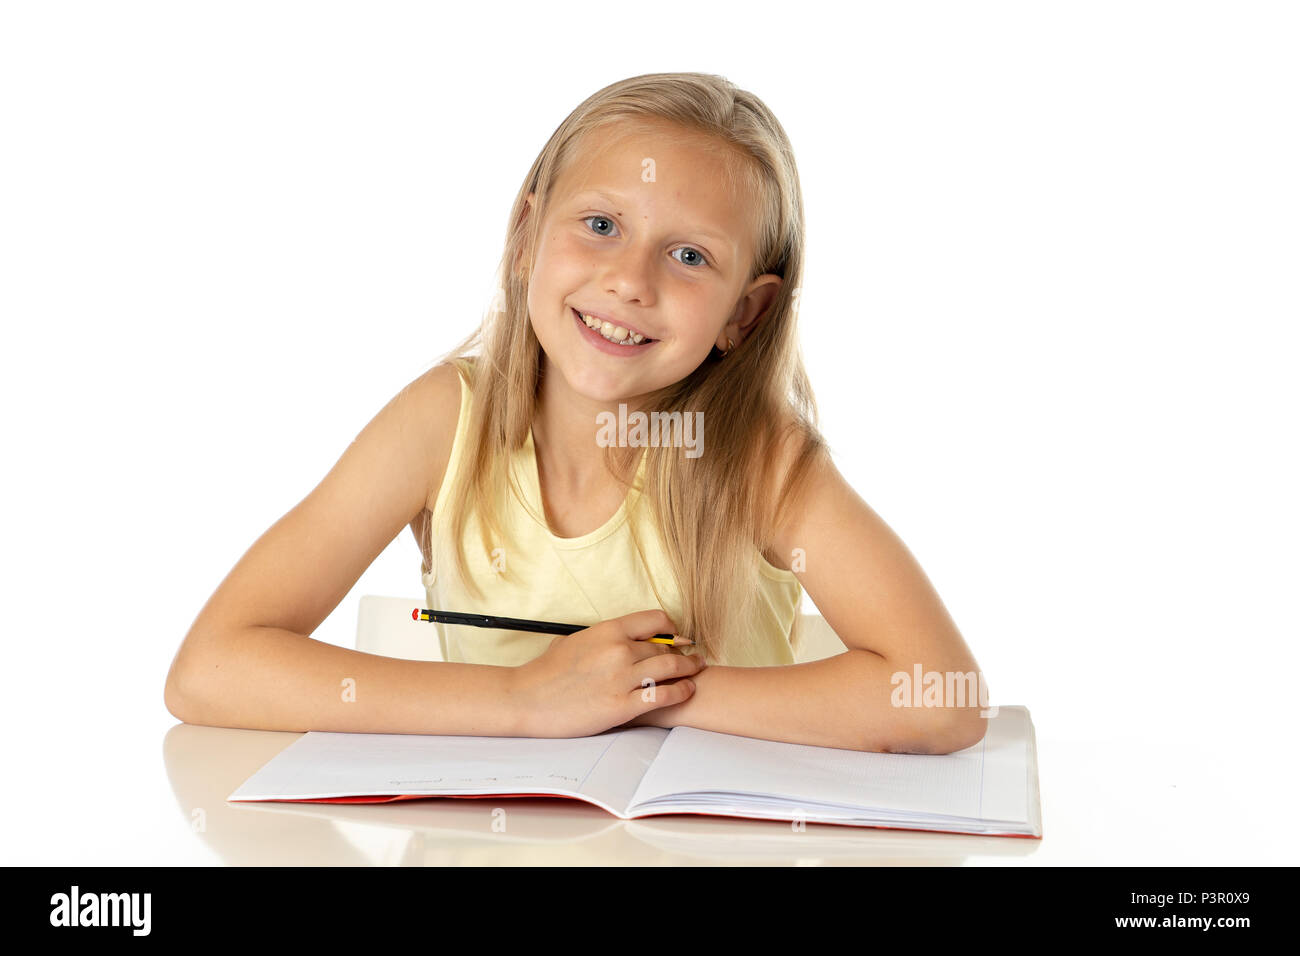 L'éducation à la maison concept jeune petite blonde woman l'étude ou l'achèvement des travaux sur la maison table d'étude avec pile de livres, les stud Banque D'Images